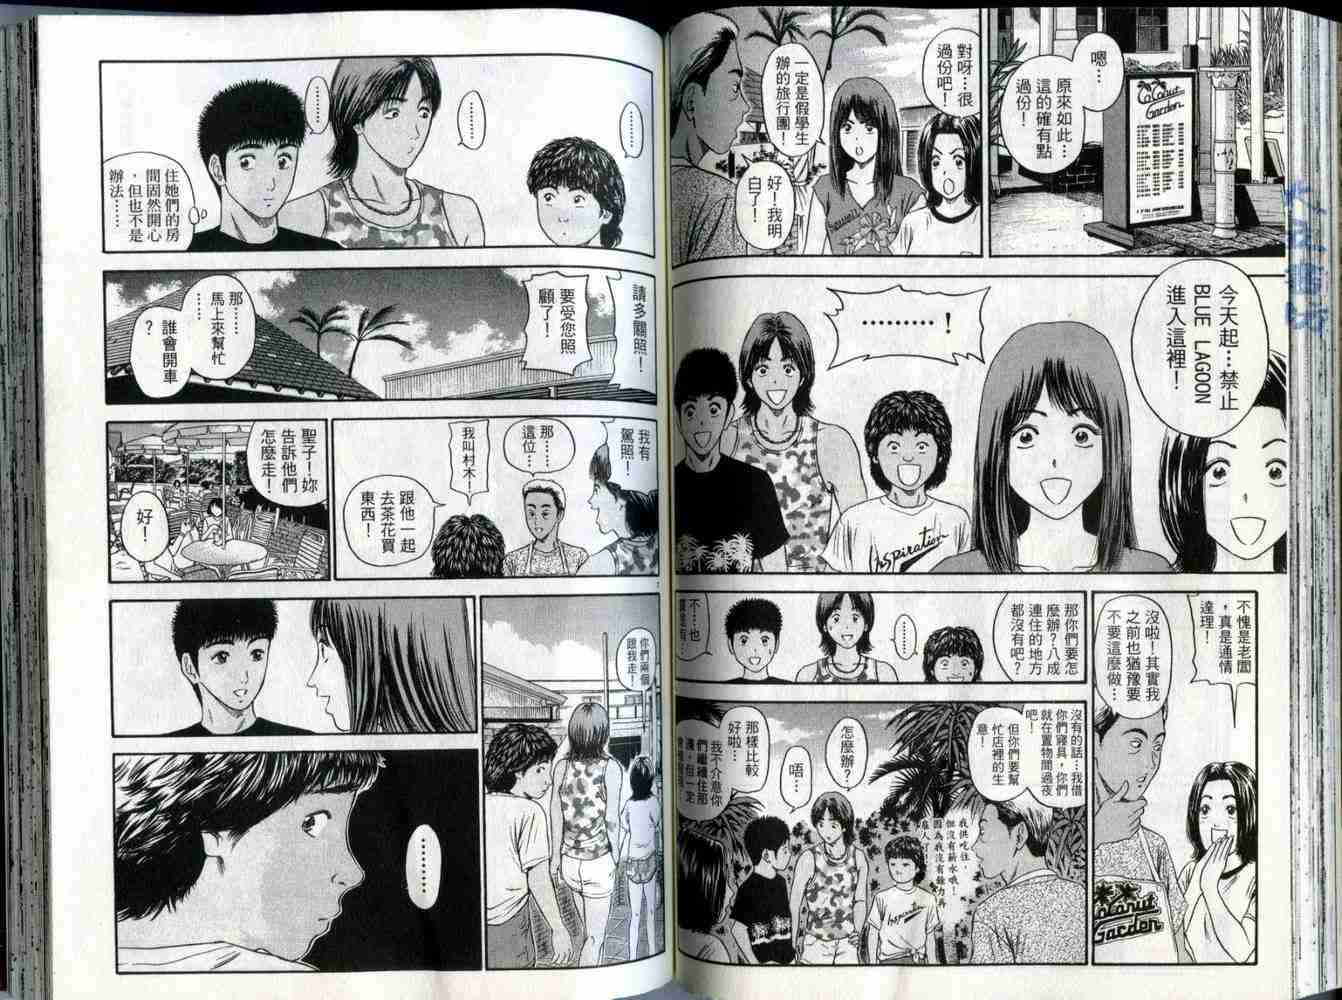 東京80年代漫畫04卷 第73頁 東京80年代04卷劇情 看漫畫